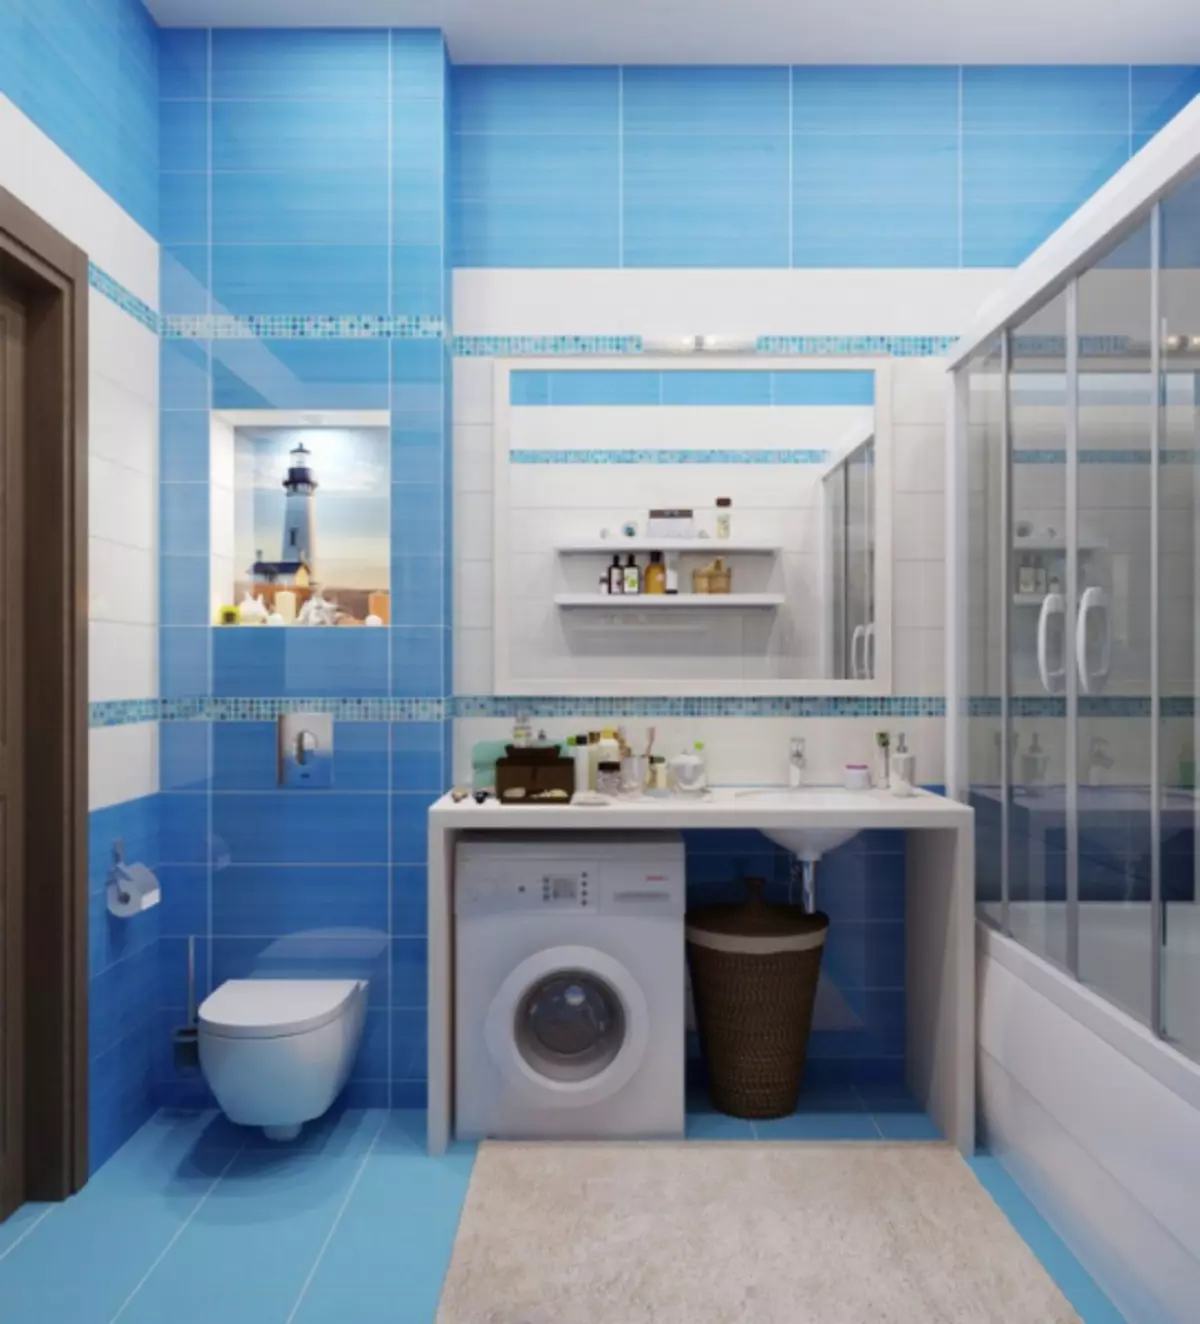 બાથરૂમ આંતરિક ટોઇલેટ સાથે જોડાય છે: નાના જગ્યા પર સુંદર અને વ્યવહારુ કેવી રીતે કરવું (38 ફોટા)